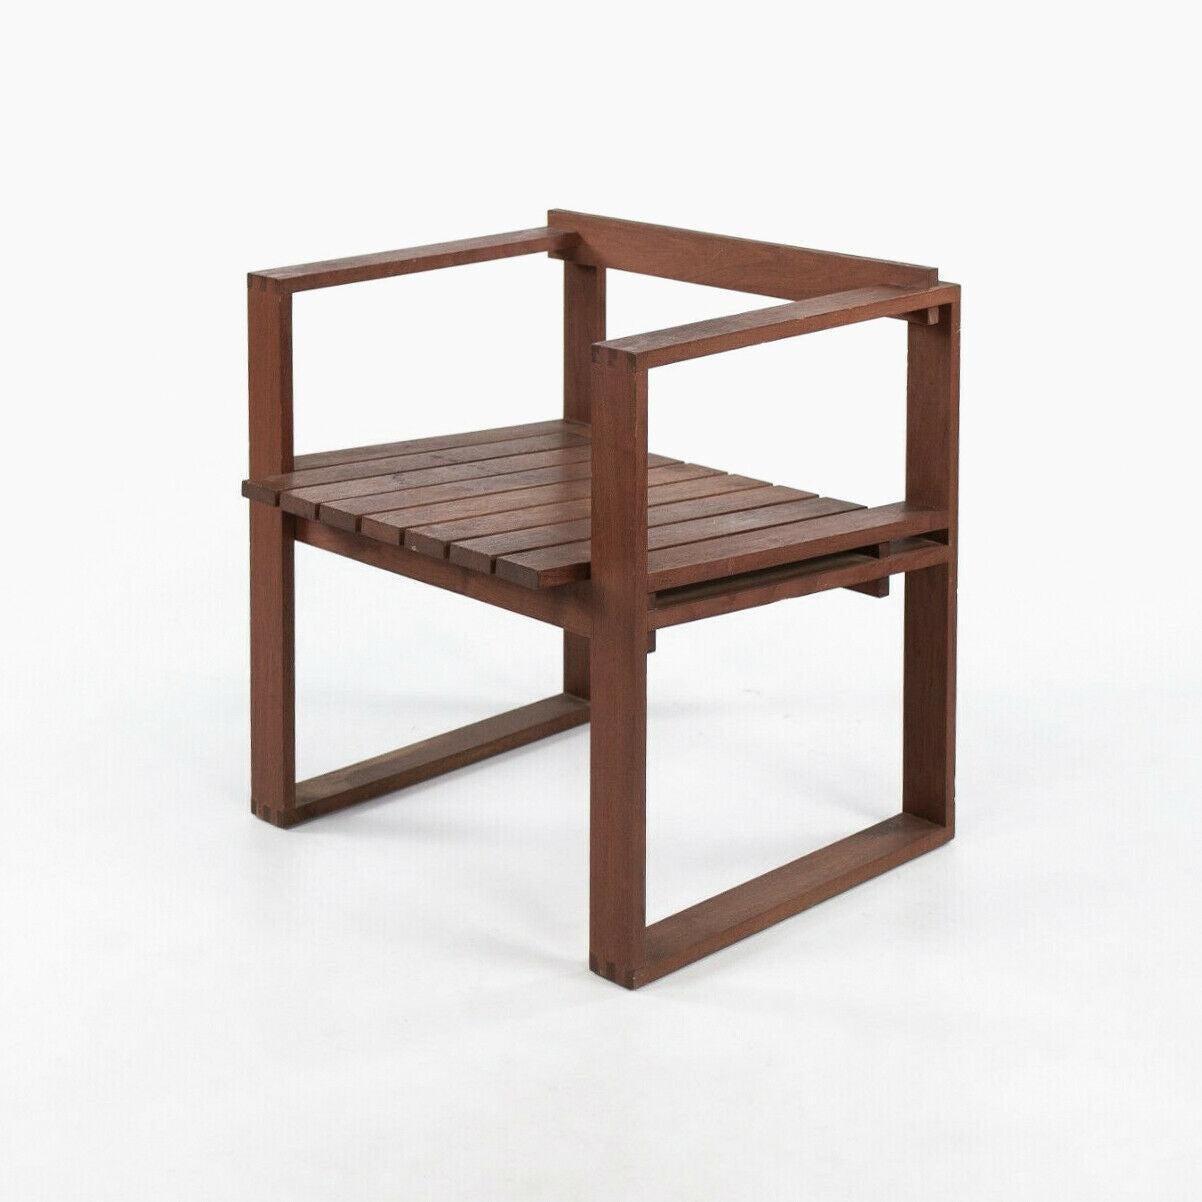 Nous proposons à la vente une très rare chaise à assise en teck de Bodil Kjaer pour CI Designs. Il y a quelques détails notables à mentionner. Tout d'abord, les meubles Bodil Kjaer d'époque sont incroyablement rares et ce n'est que récemment que des